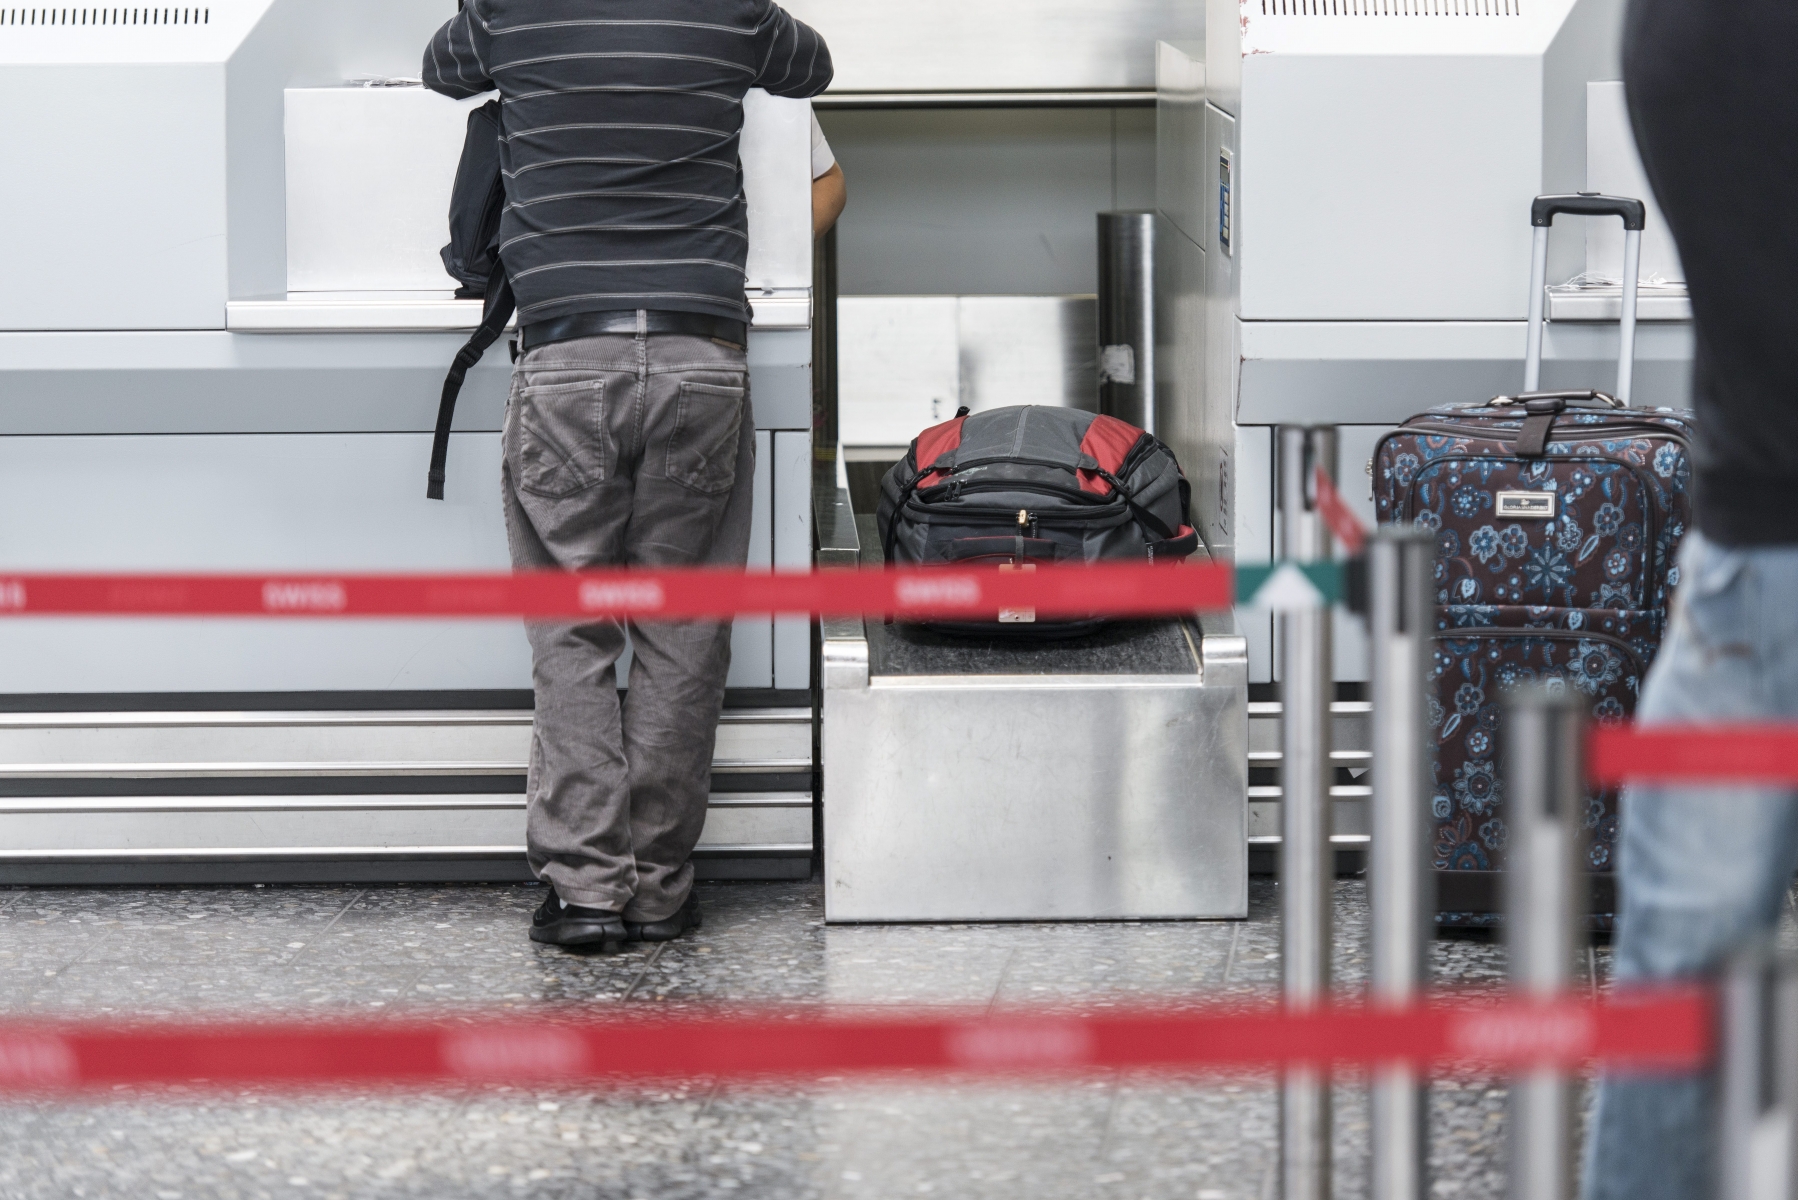 ARCHIV -- Ein Passagier checked ein am Flughafen Zuerich Check-In 1 am 31. Juli 2014. Die Bundesanwaltschaft hat am Dienstag, 7. April 2015 einen mutmasslichen Dschihadisten an der Ausreise gehindert. Sie hat am Flughafen Zuerich einen 25-jaehrigen Schweizer verhaftet, der nach Instanbul reisen wollte. Ihm wird vorgeworfen, sich an einer verbotenen Gruppierung zu beteiligen, wie die Bundesanwaltschaft am Mittwoch mitteilte.  (KEYSTONE/Christian Beutler)